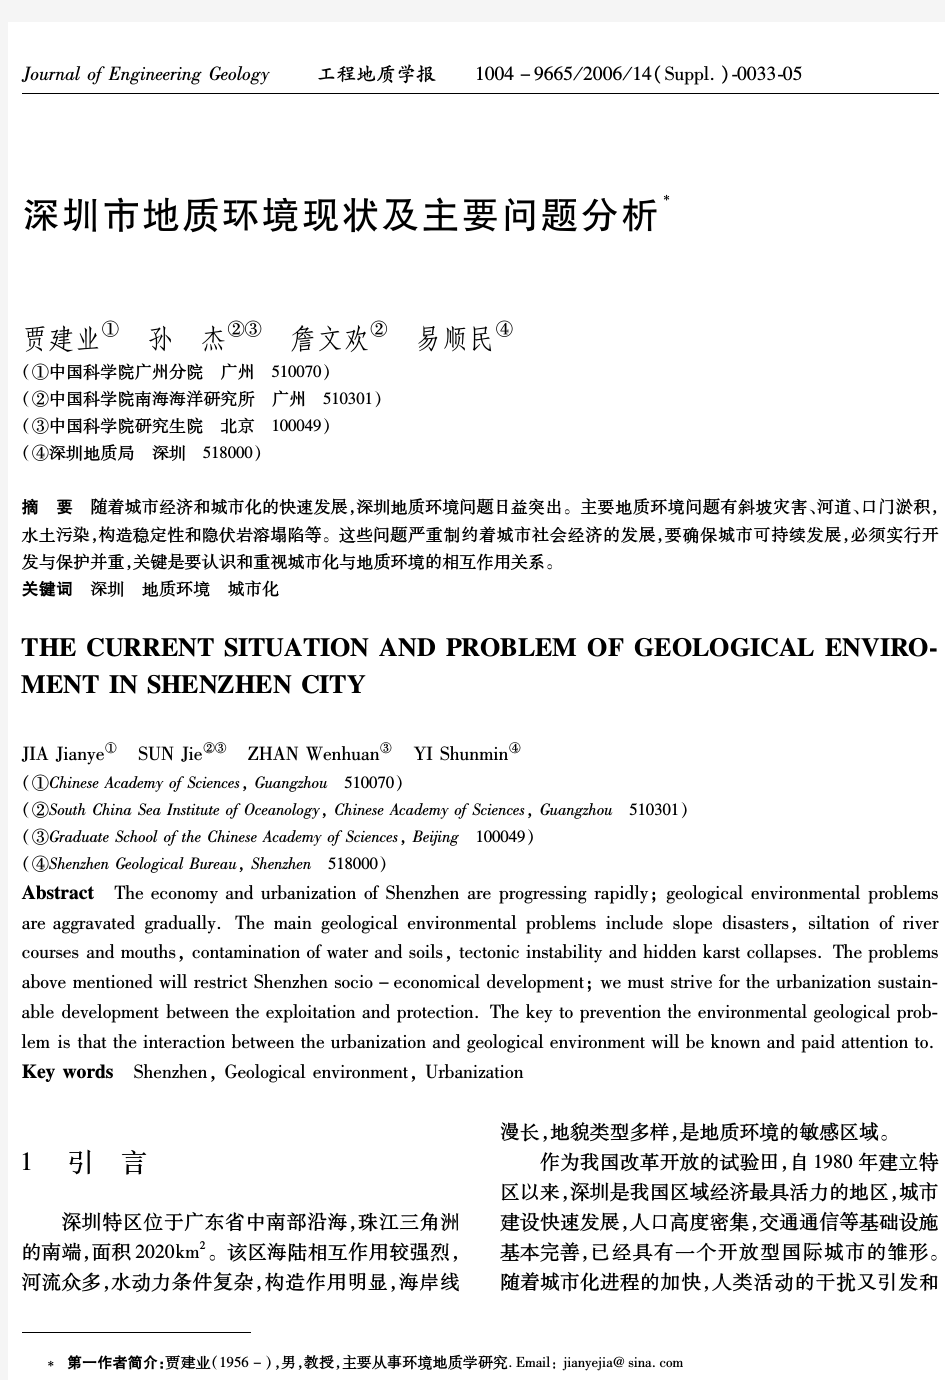 深圳市地质环境现状及主要问题分析